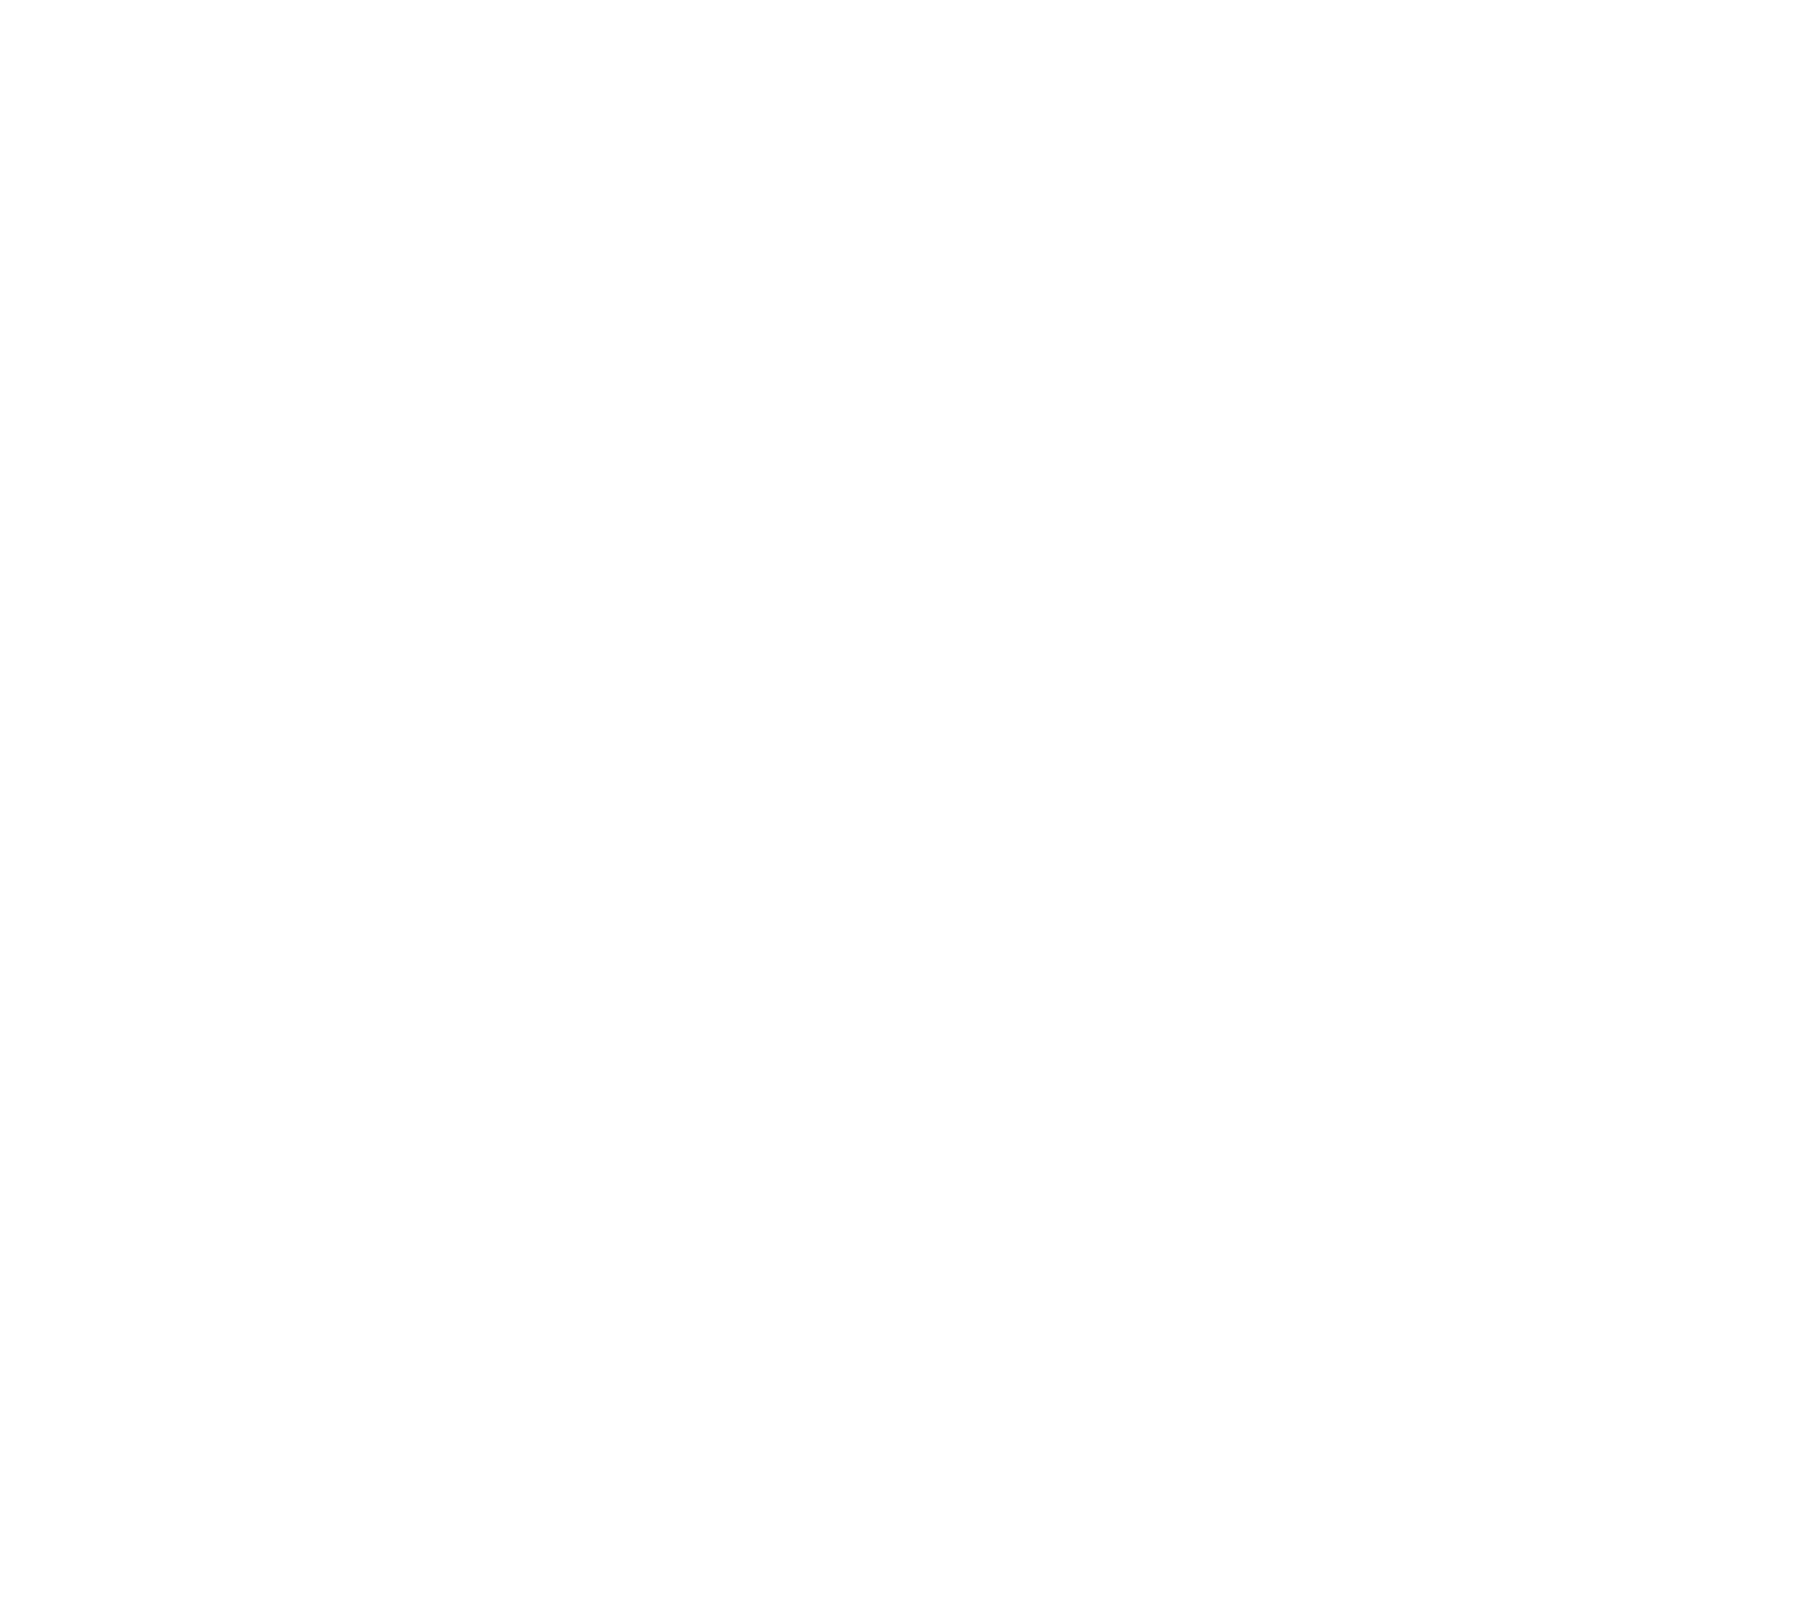 White Optimum Human logo